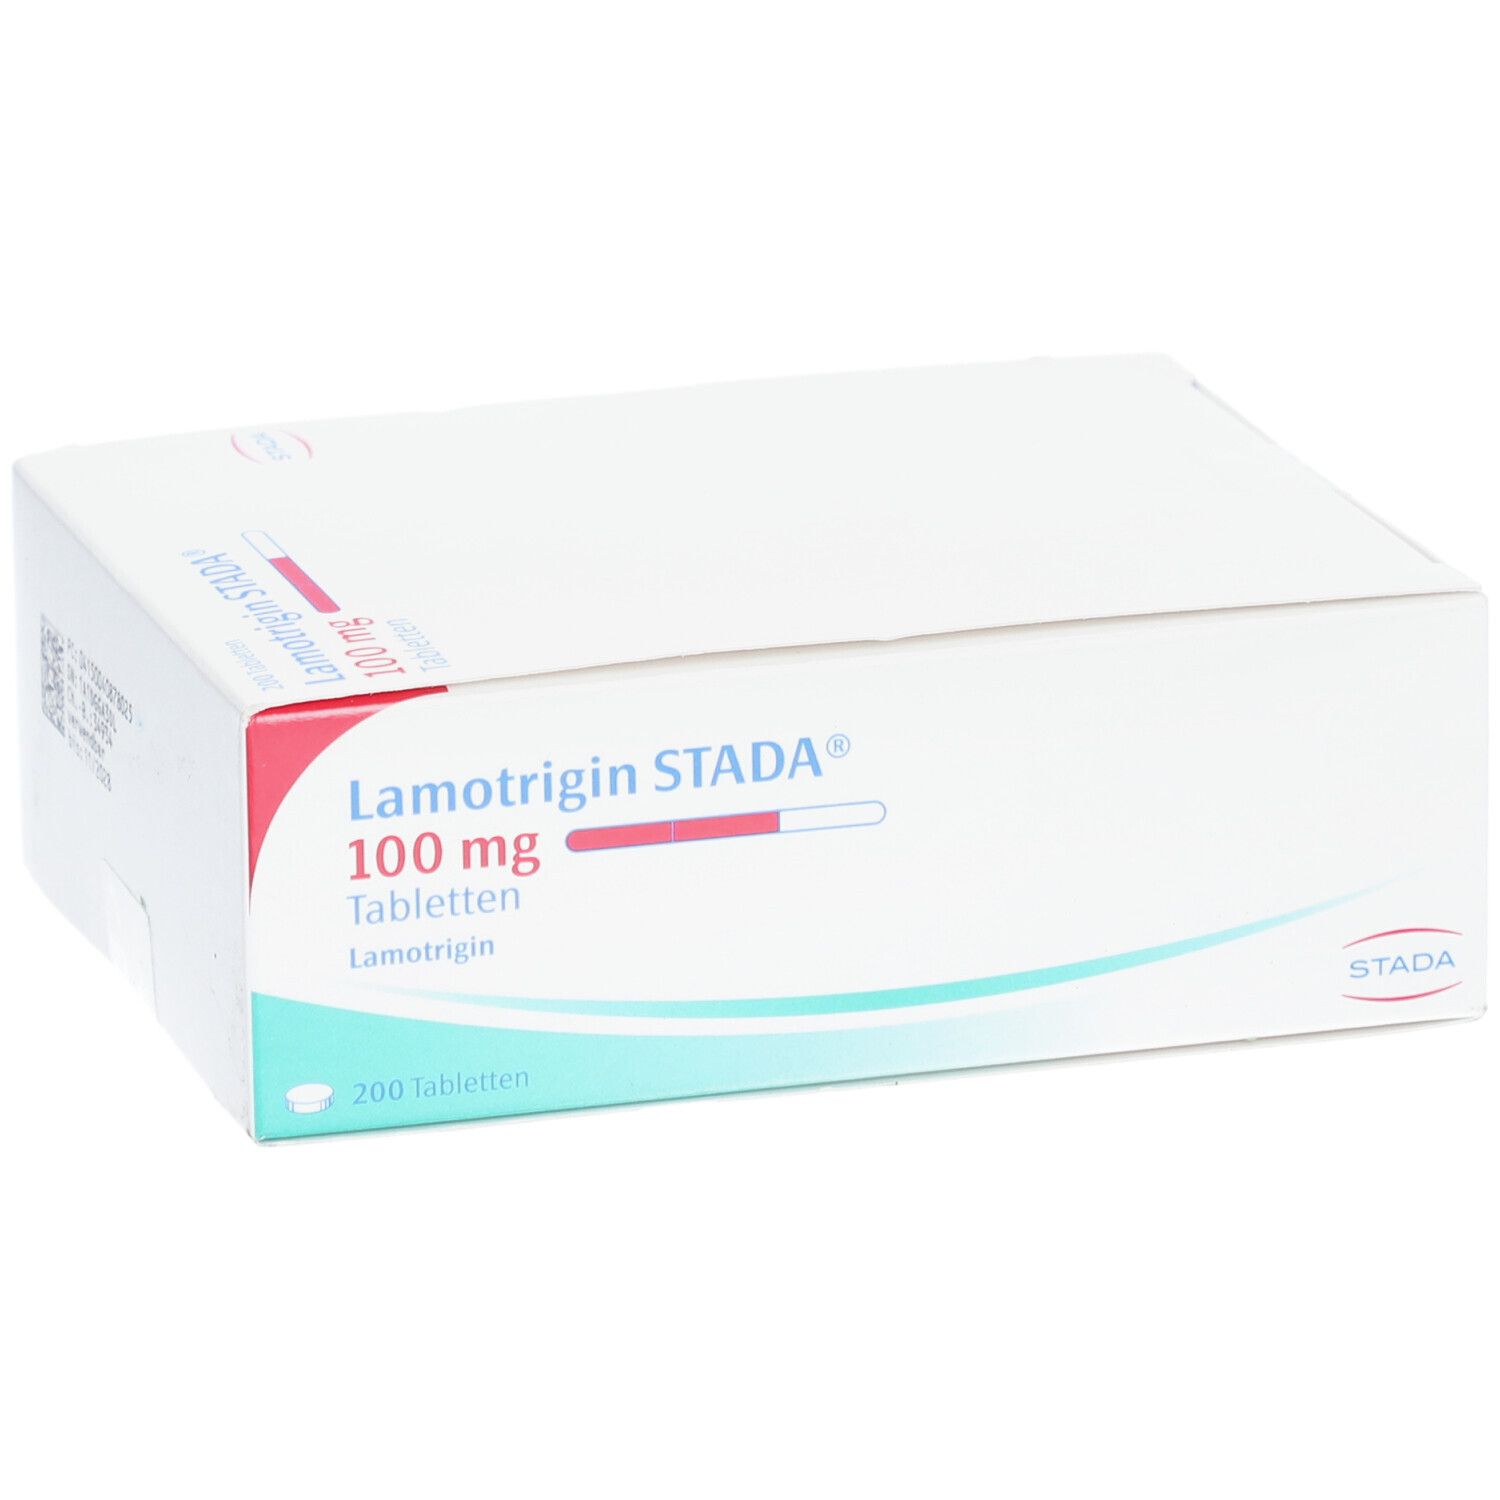 Lamotrigin STADA® 100 mg